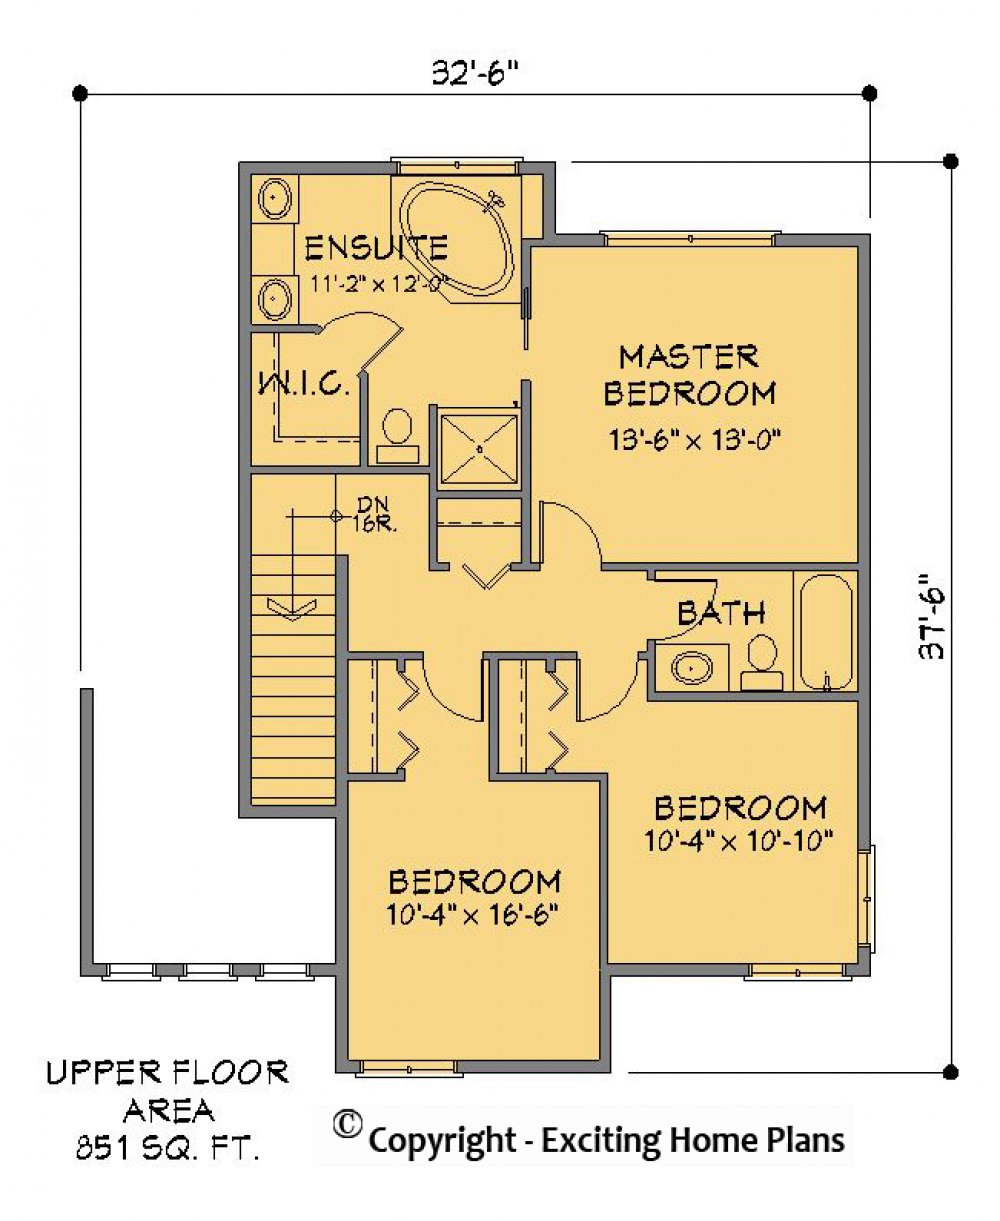 House Plan E1276-10 Upper Floor Plan